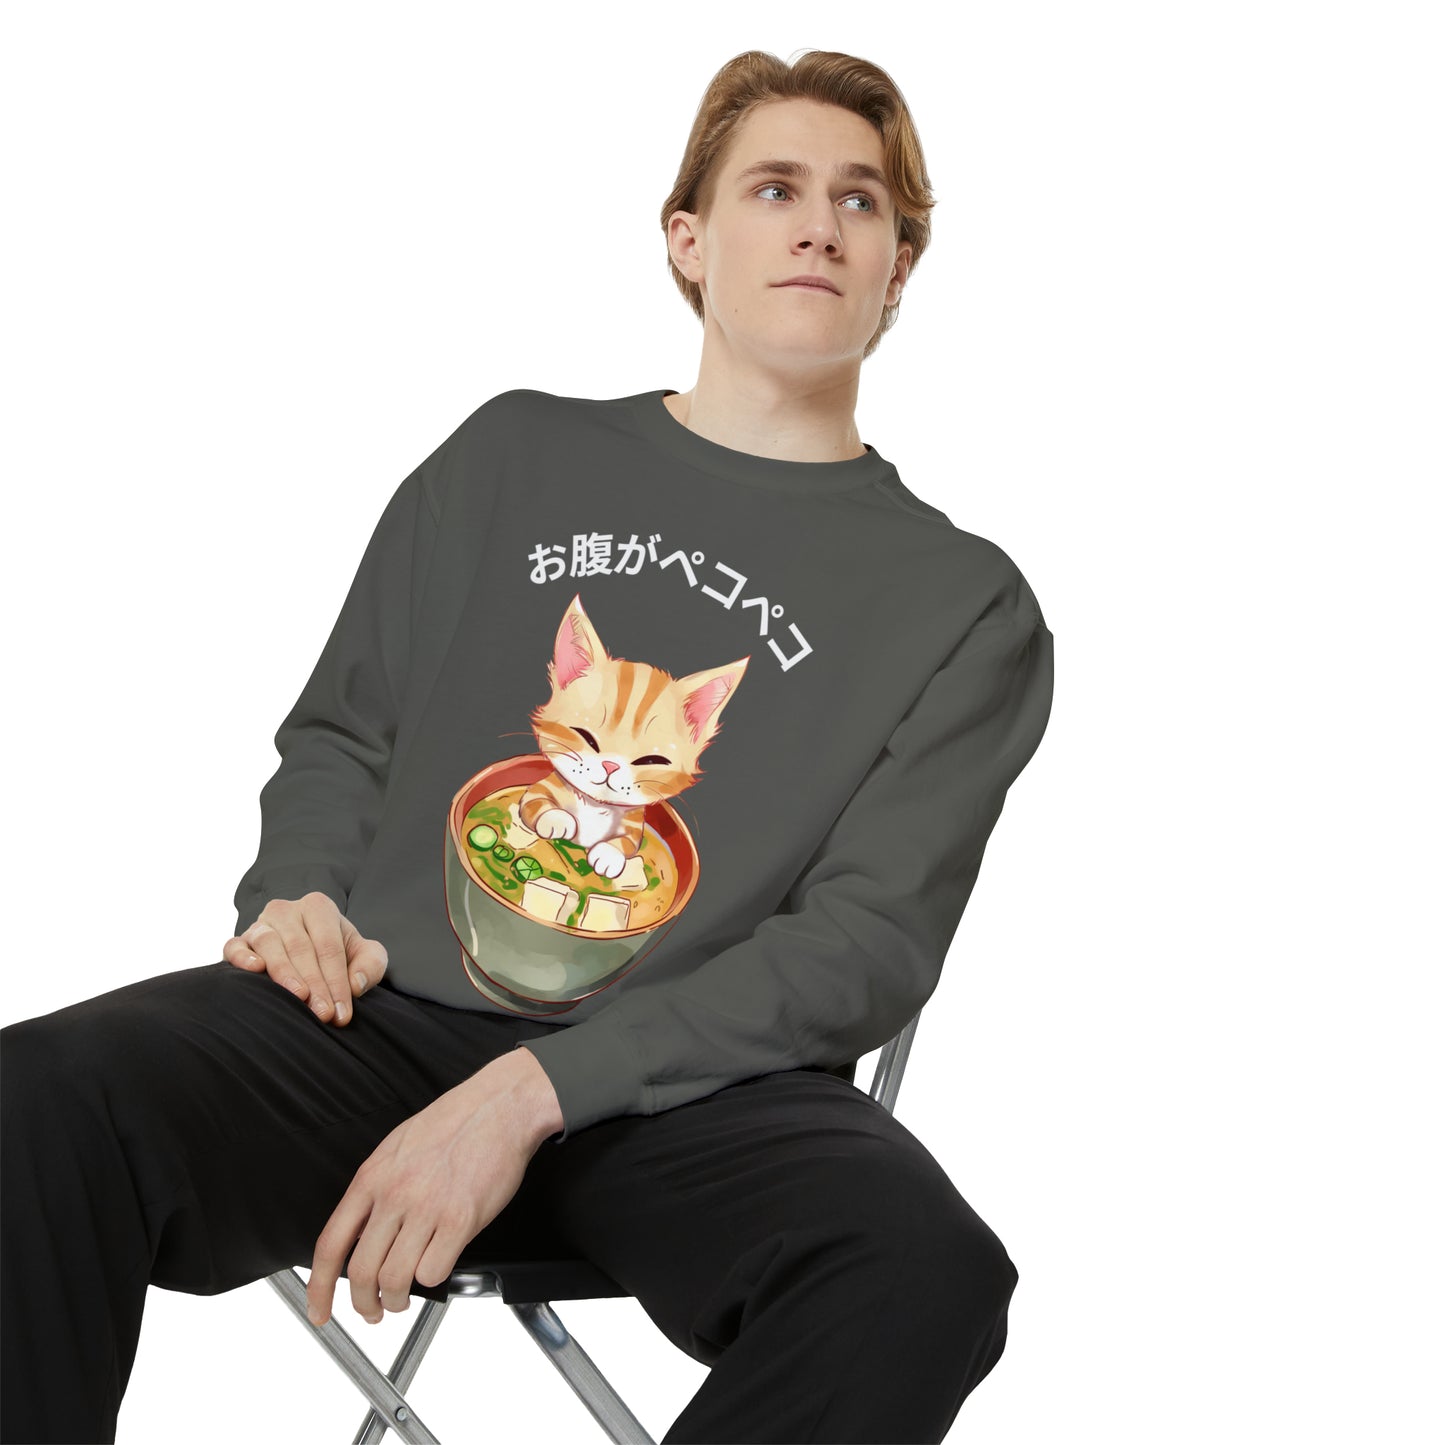 お腹がペコペコ Cat in Miso Soup Sweatshirt: Cozy Comfort & Kawaii Style